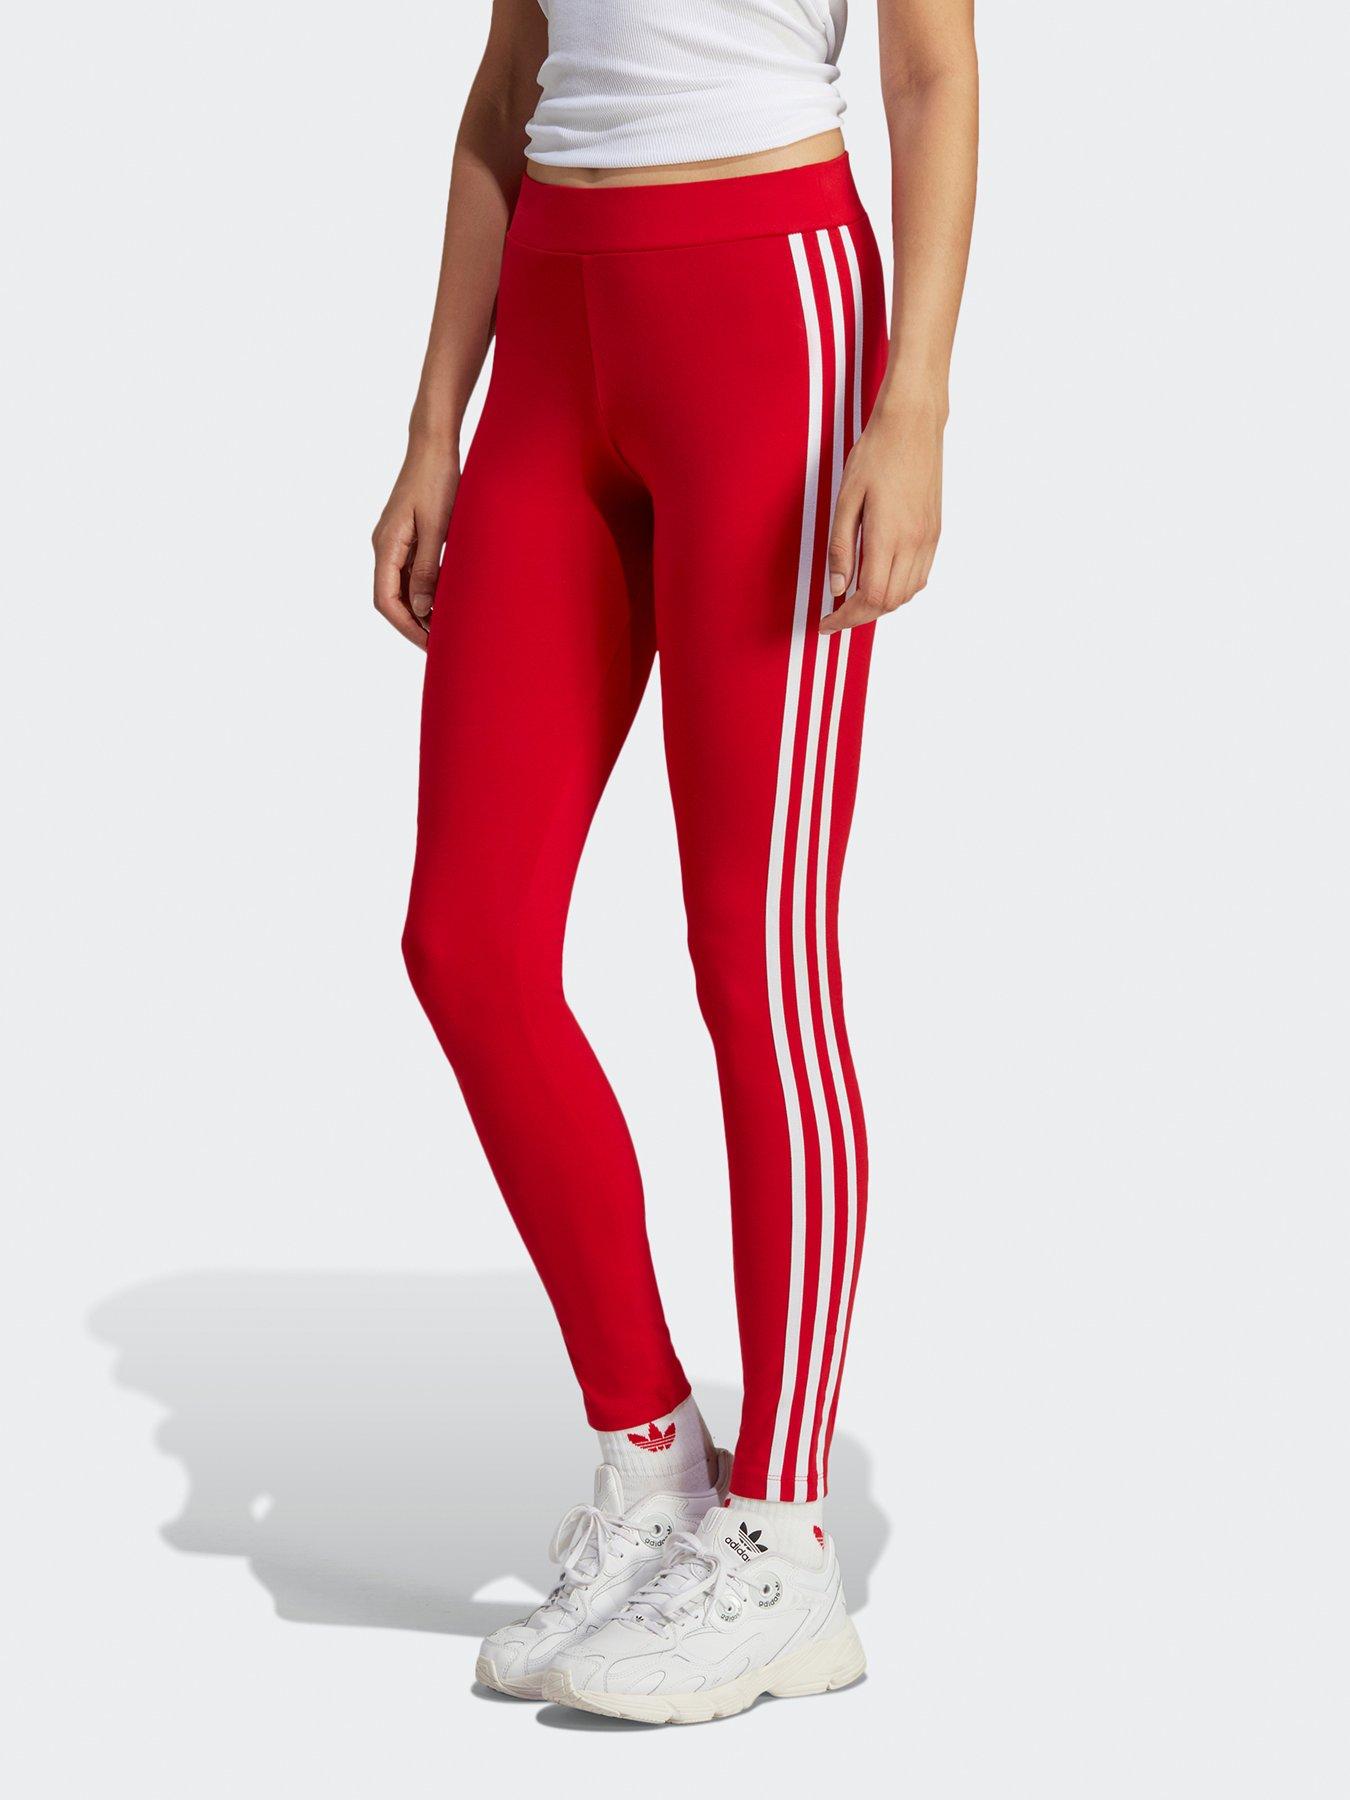 adidas Originals Adicolor Leggings - Red